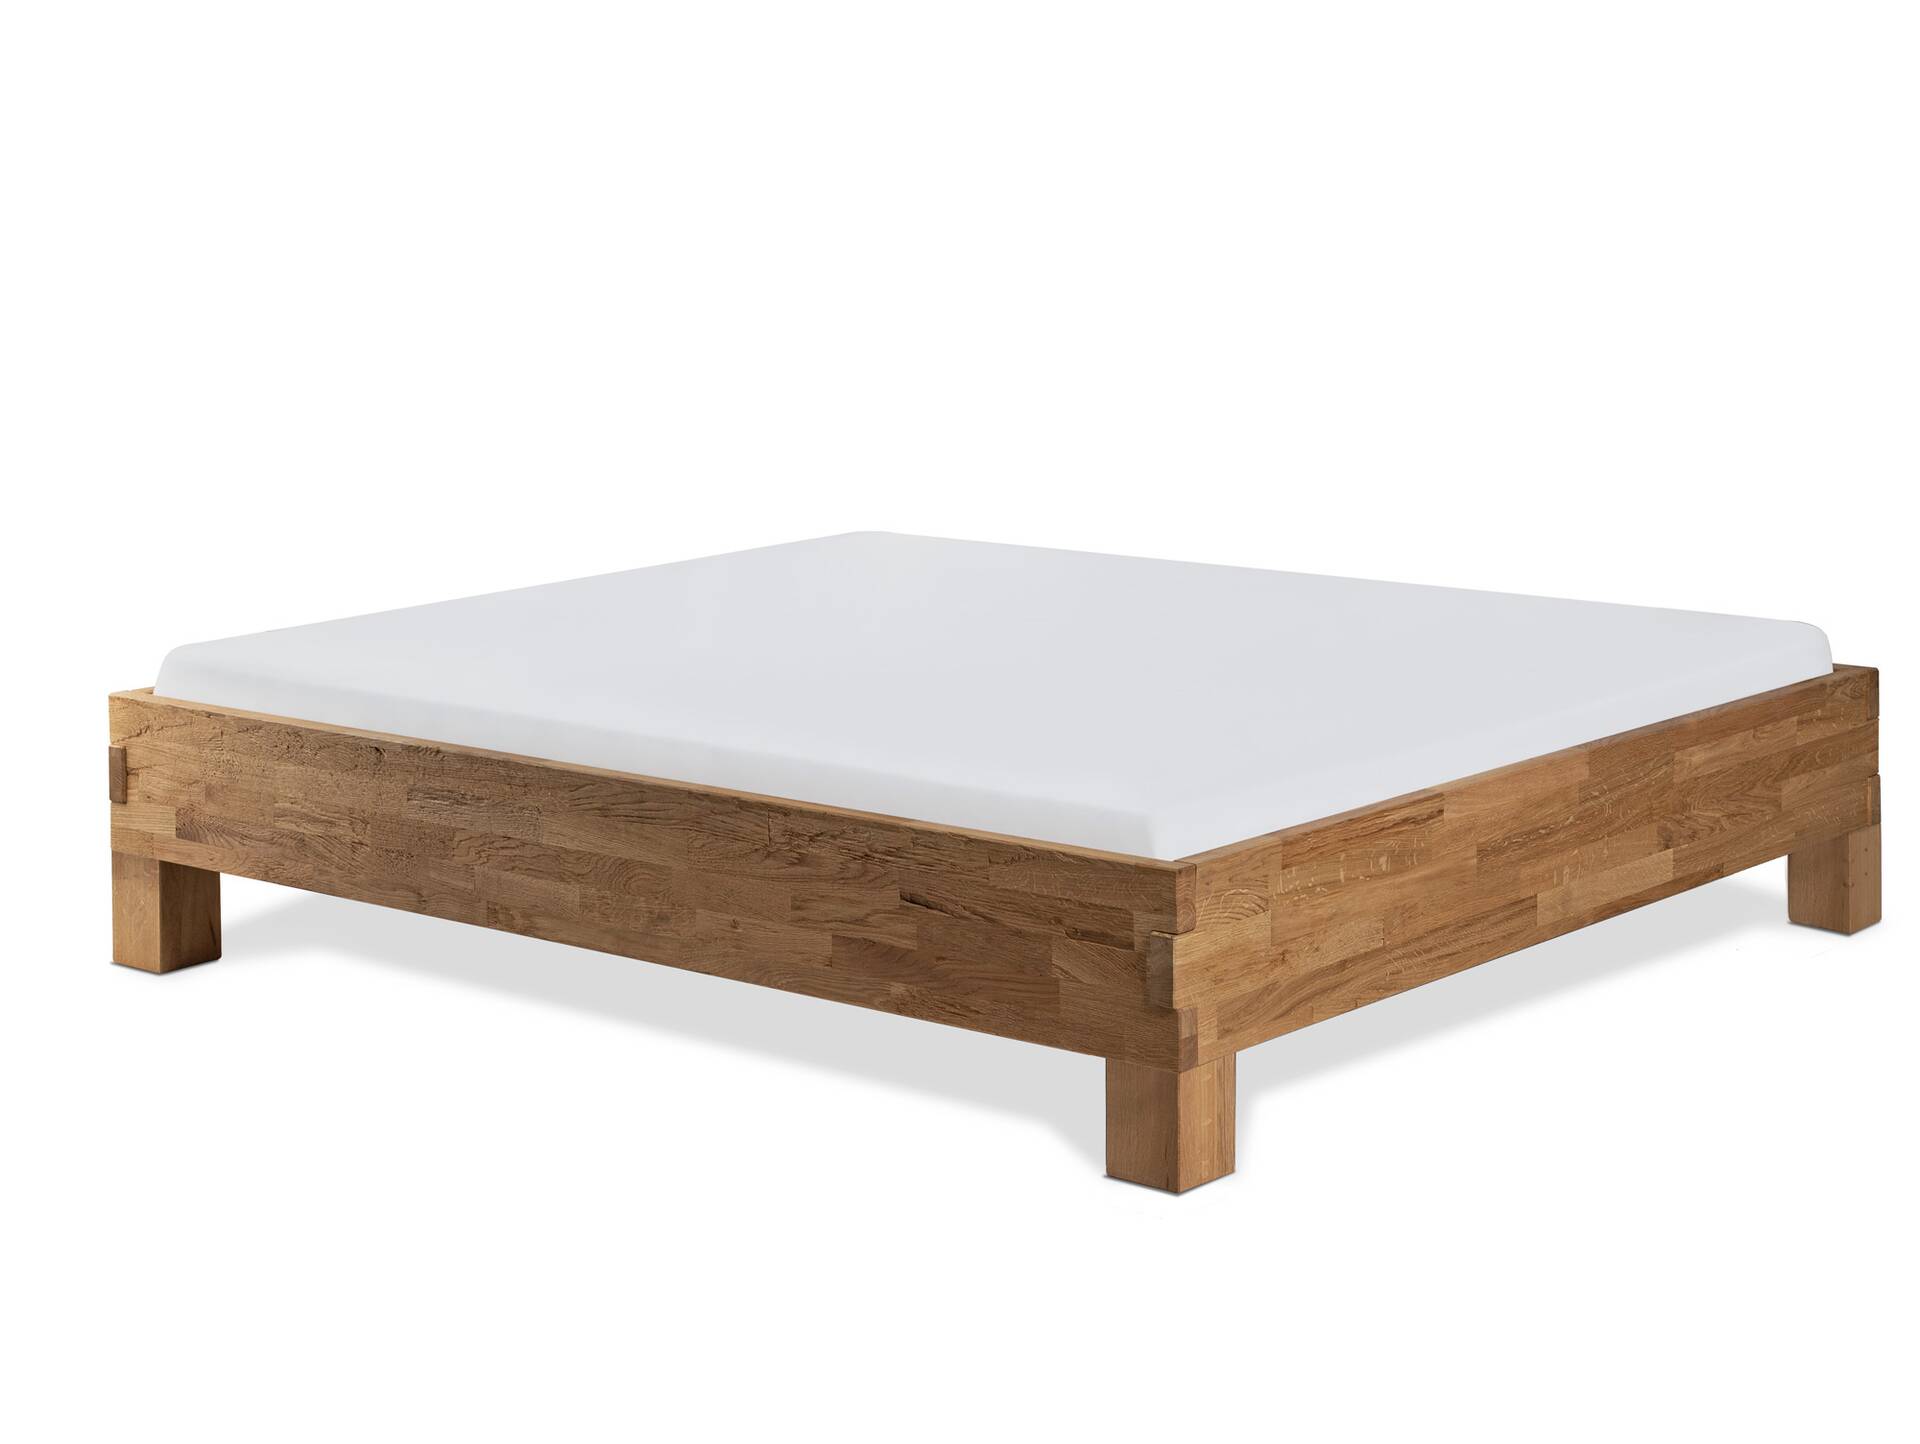 CORDINO 4-Fuß-Bett aus Eiche ohne Kopfteil, Material Massivholz 160 x 200 cm | Eiche unbehandelt | gehackt 